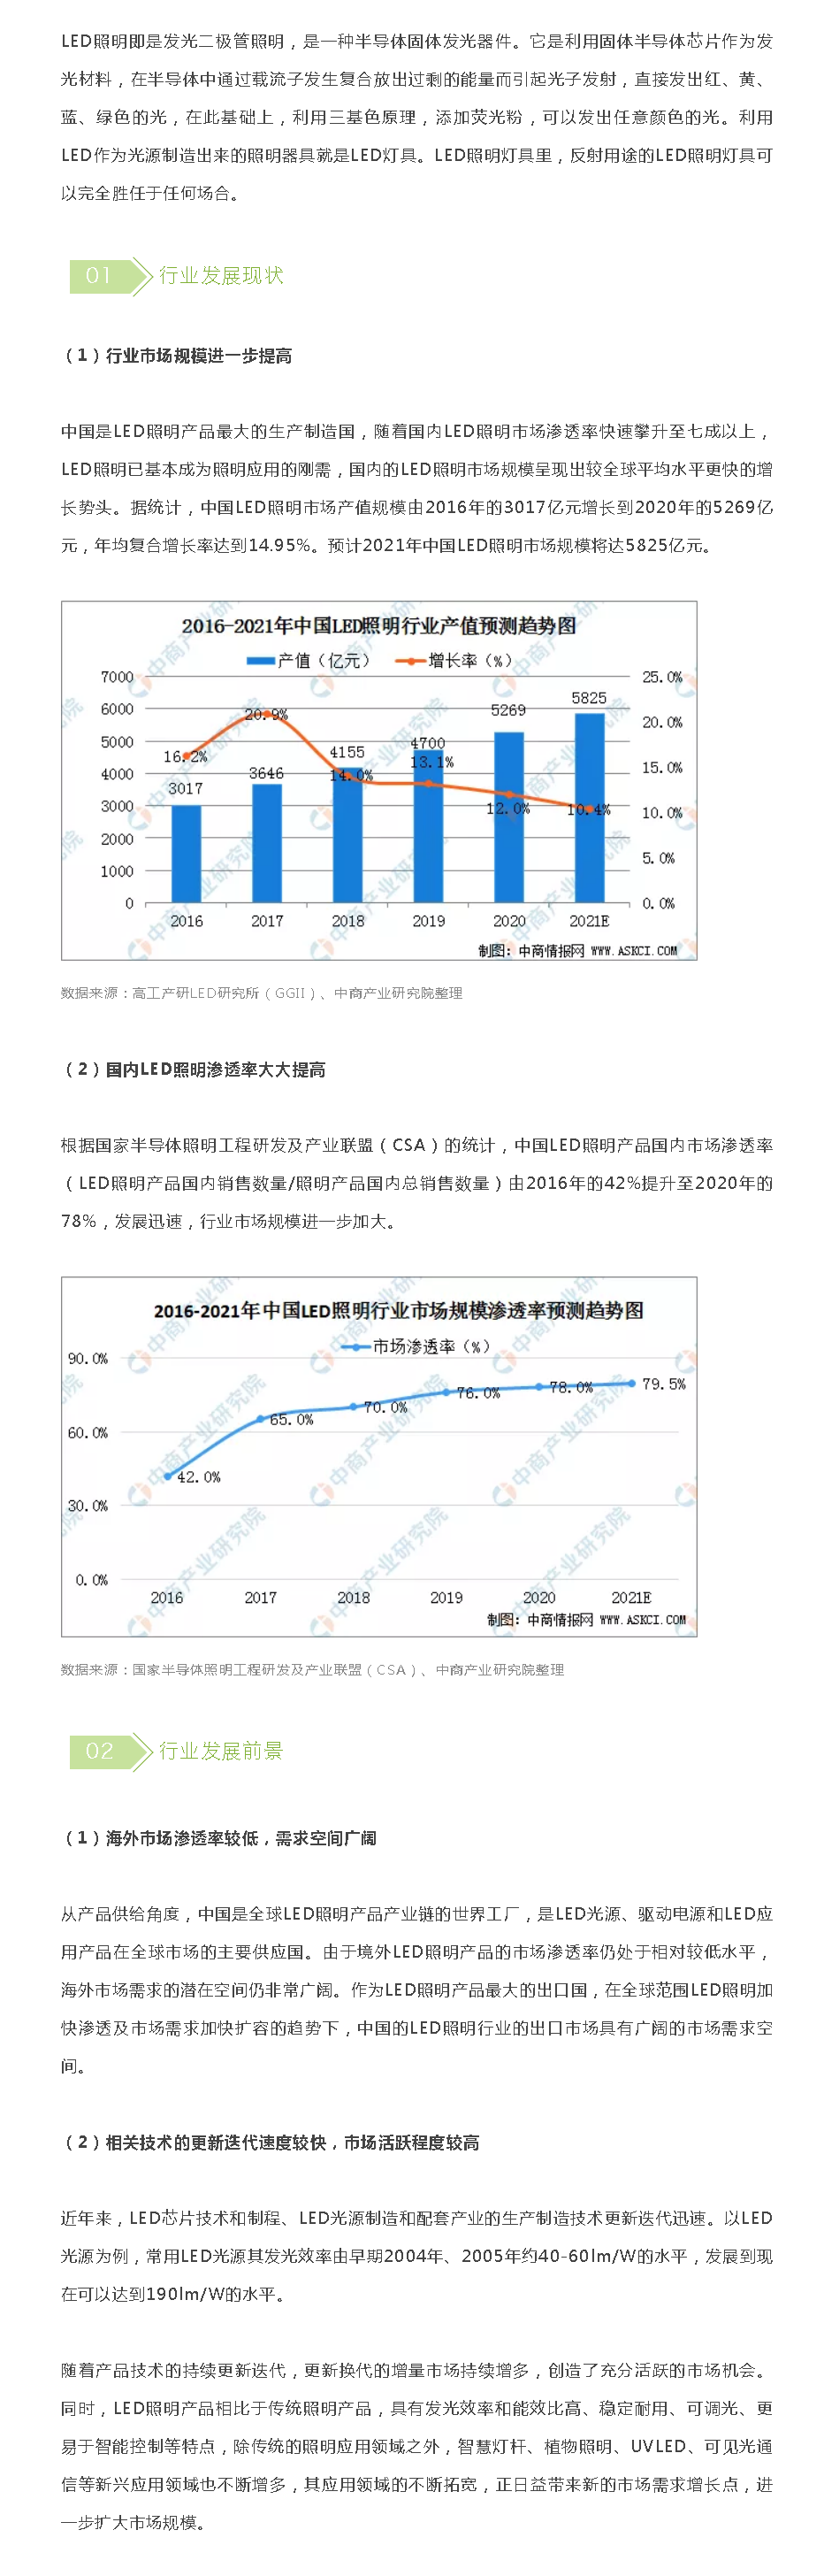 2021年中国LED照明行业发展现状及行业发展前景分析_看图王.png